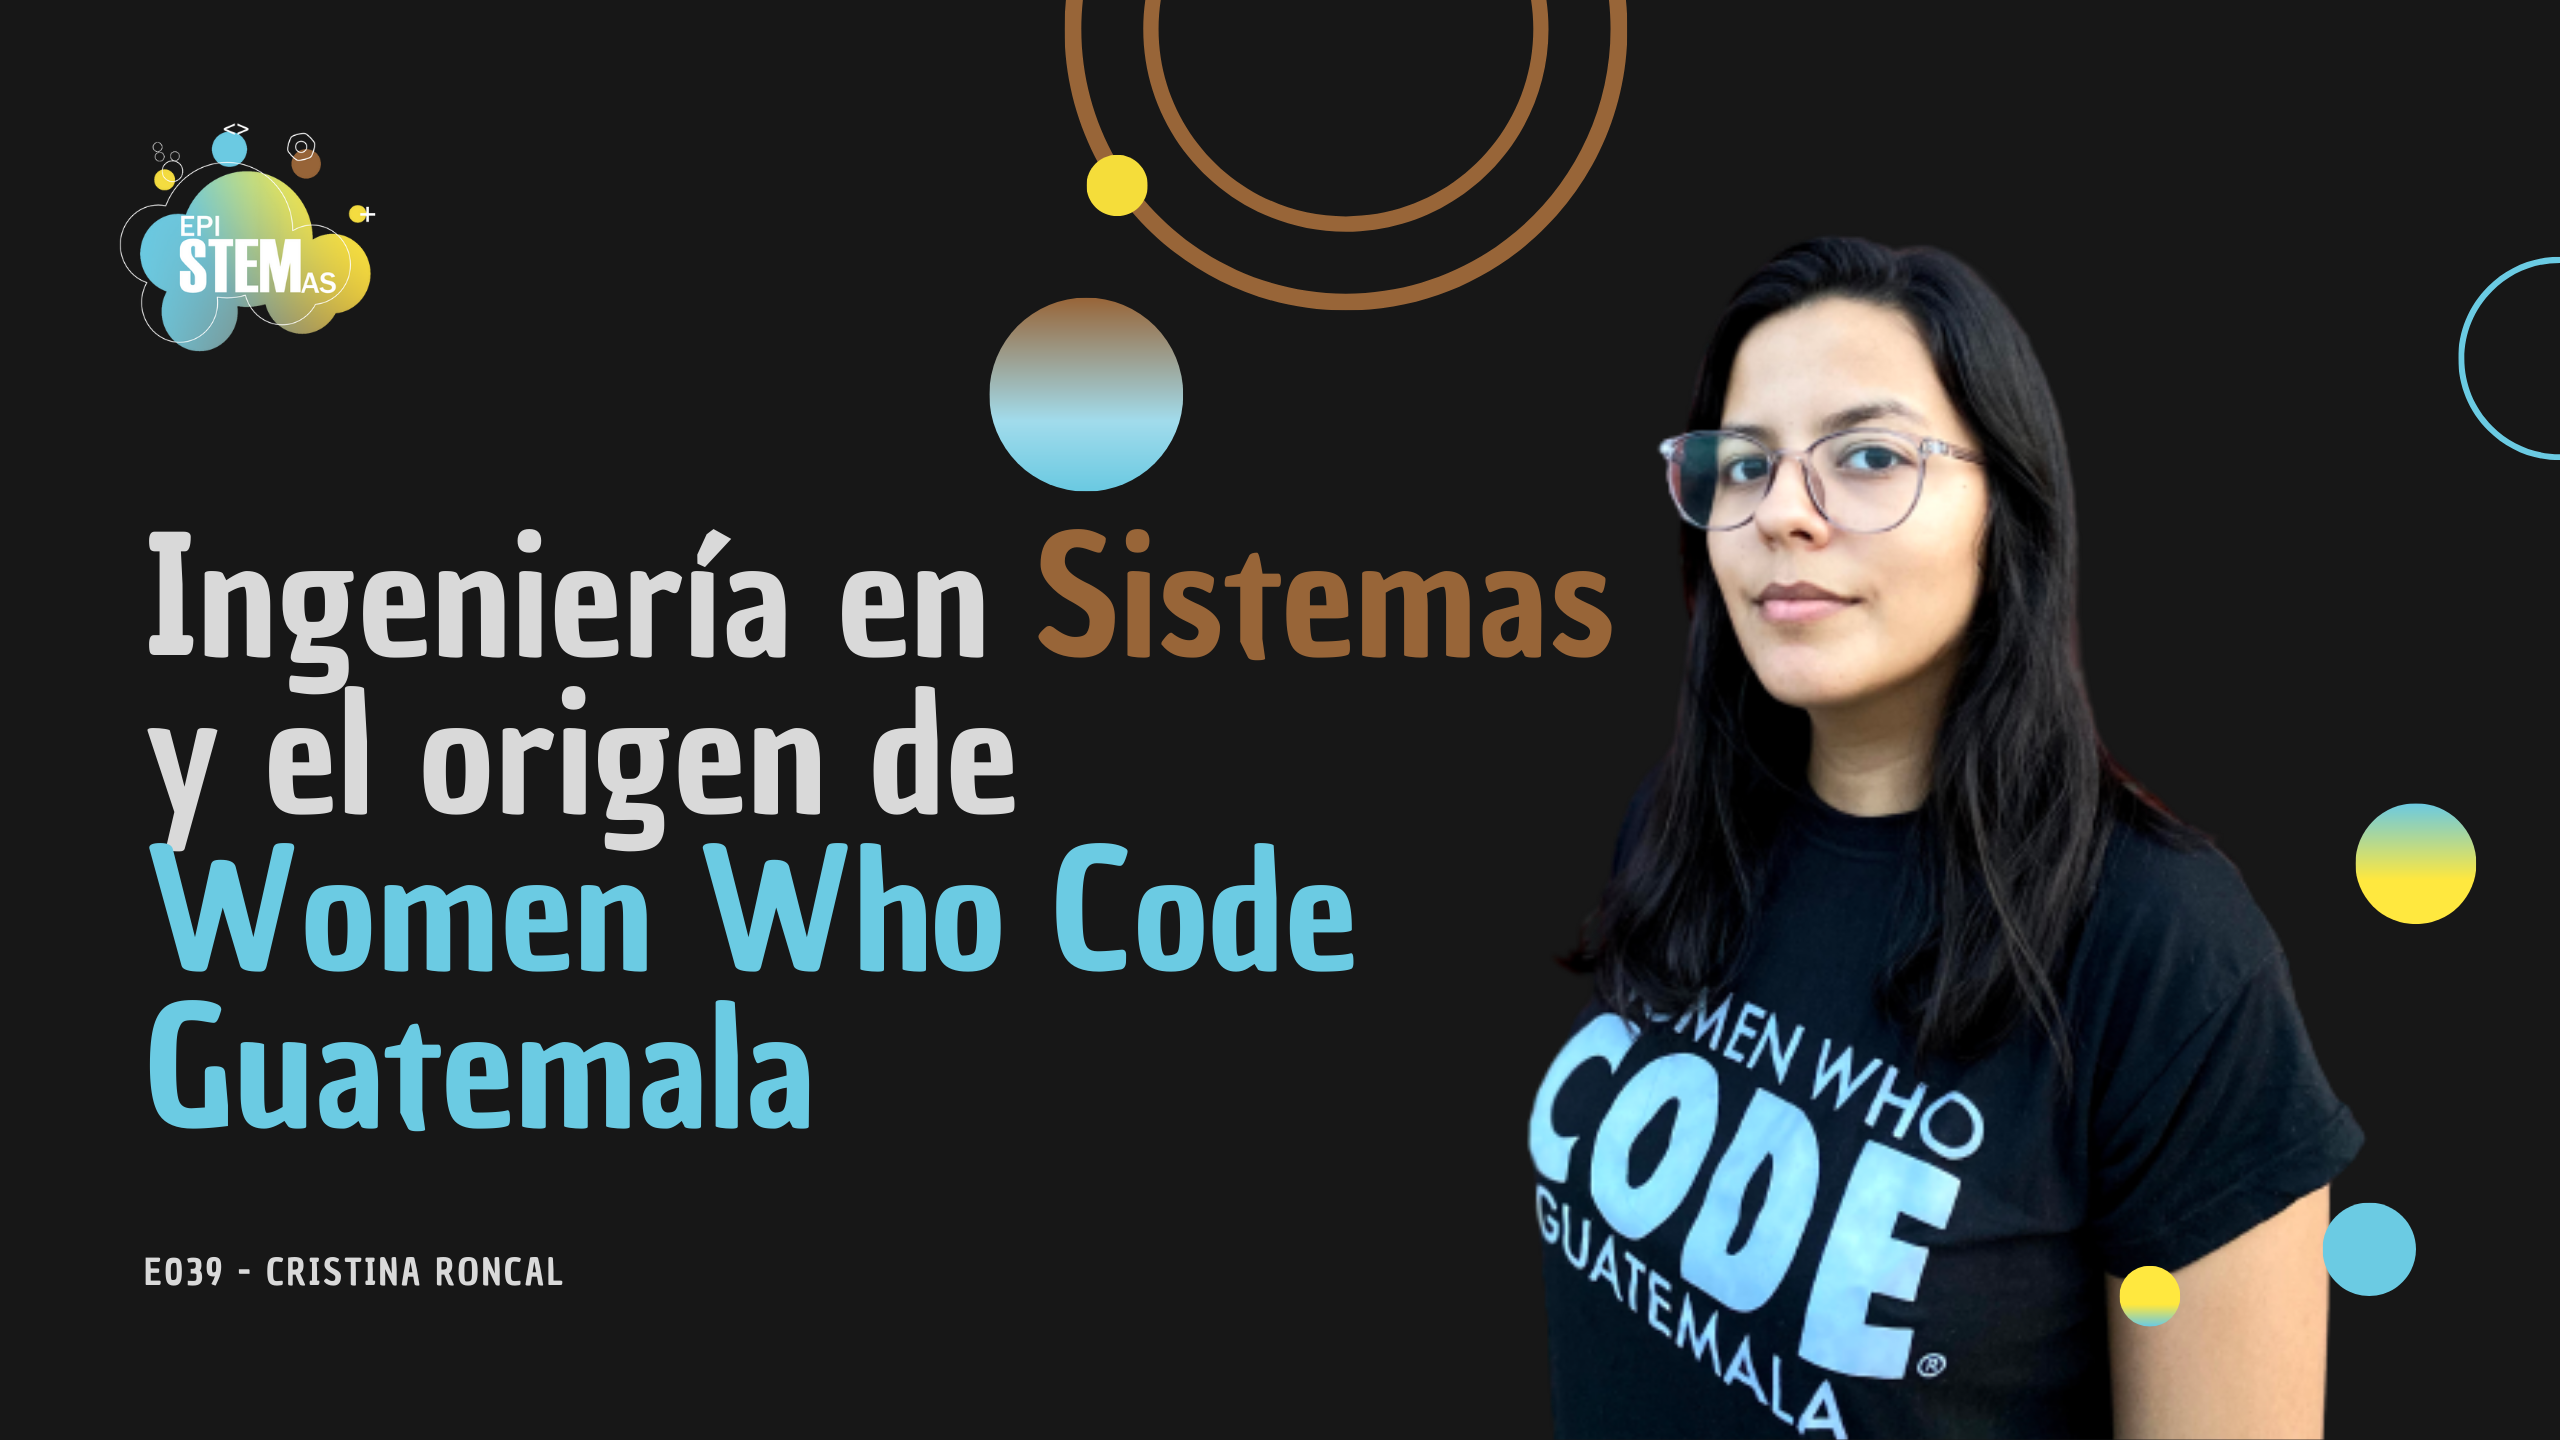 Ingeniería en sistemas y el origen de Women Who Code Guatemala